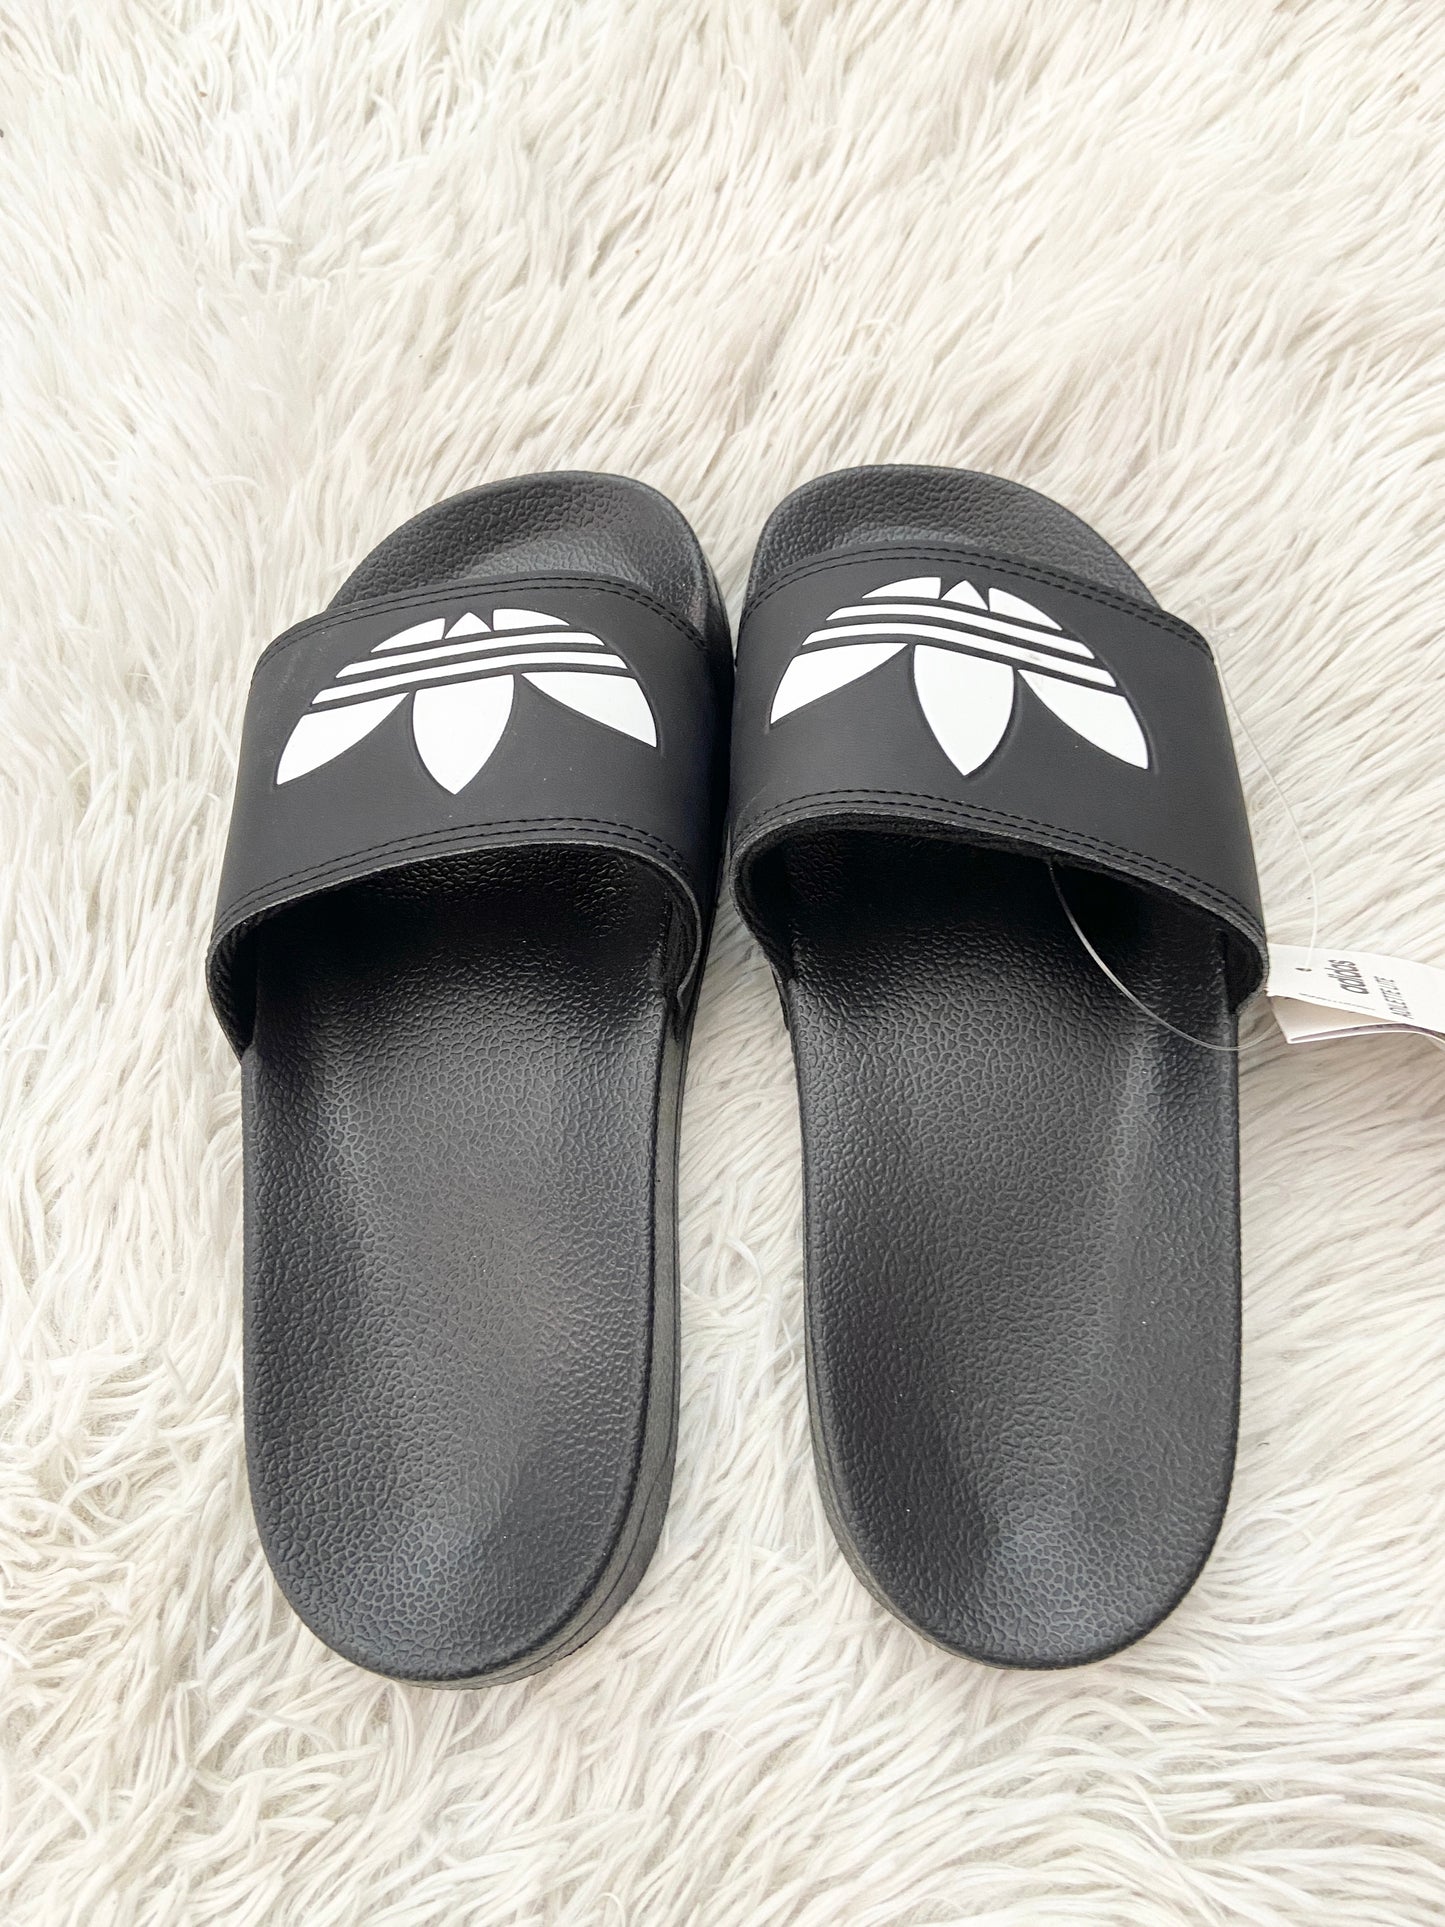 Sandalias Adidas original negra con logotipo en frente de la marca en blanco.